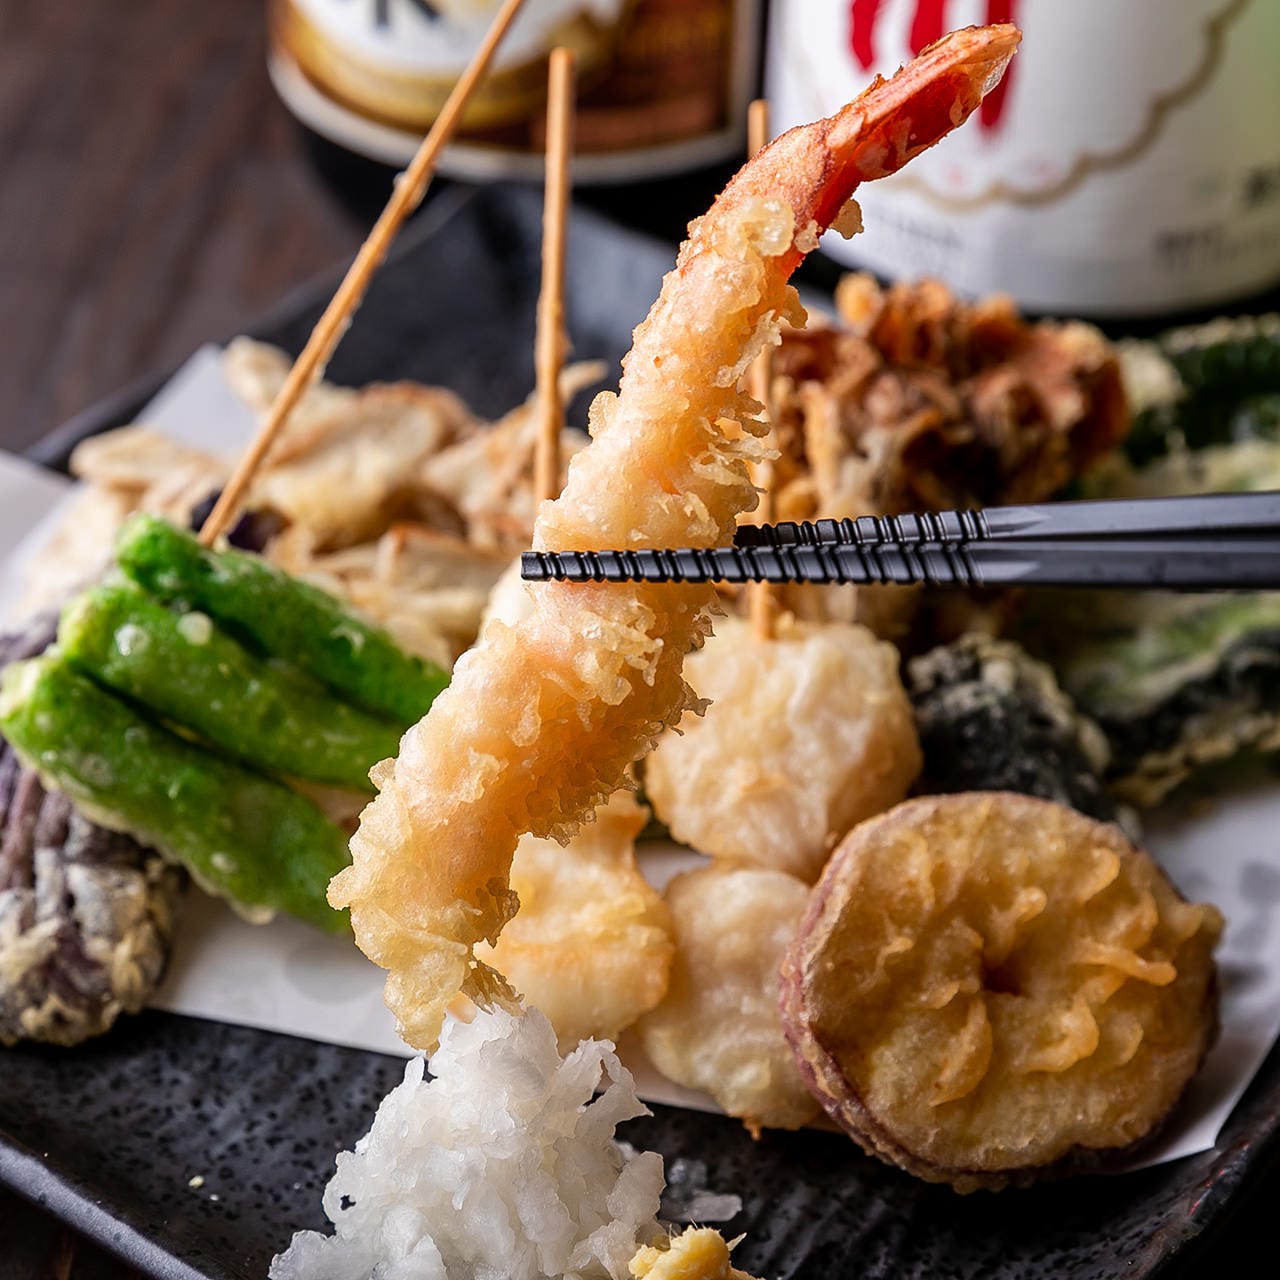 サクッとした歯ごたえと素材の旨味が楽しめる名物「天ぷら」